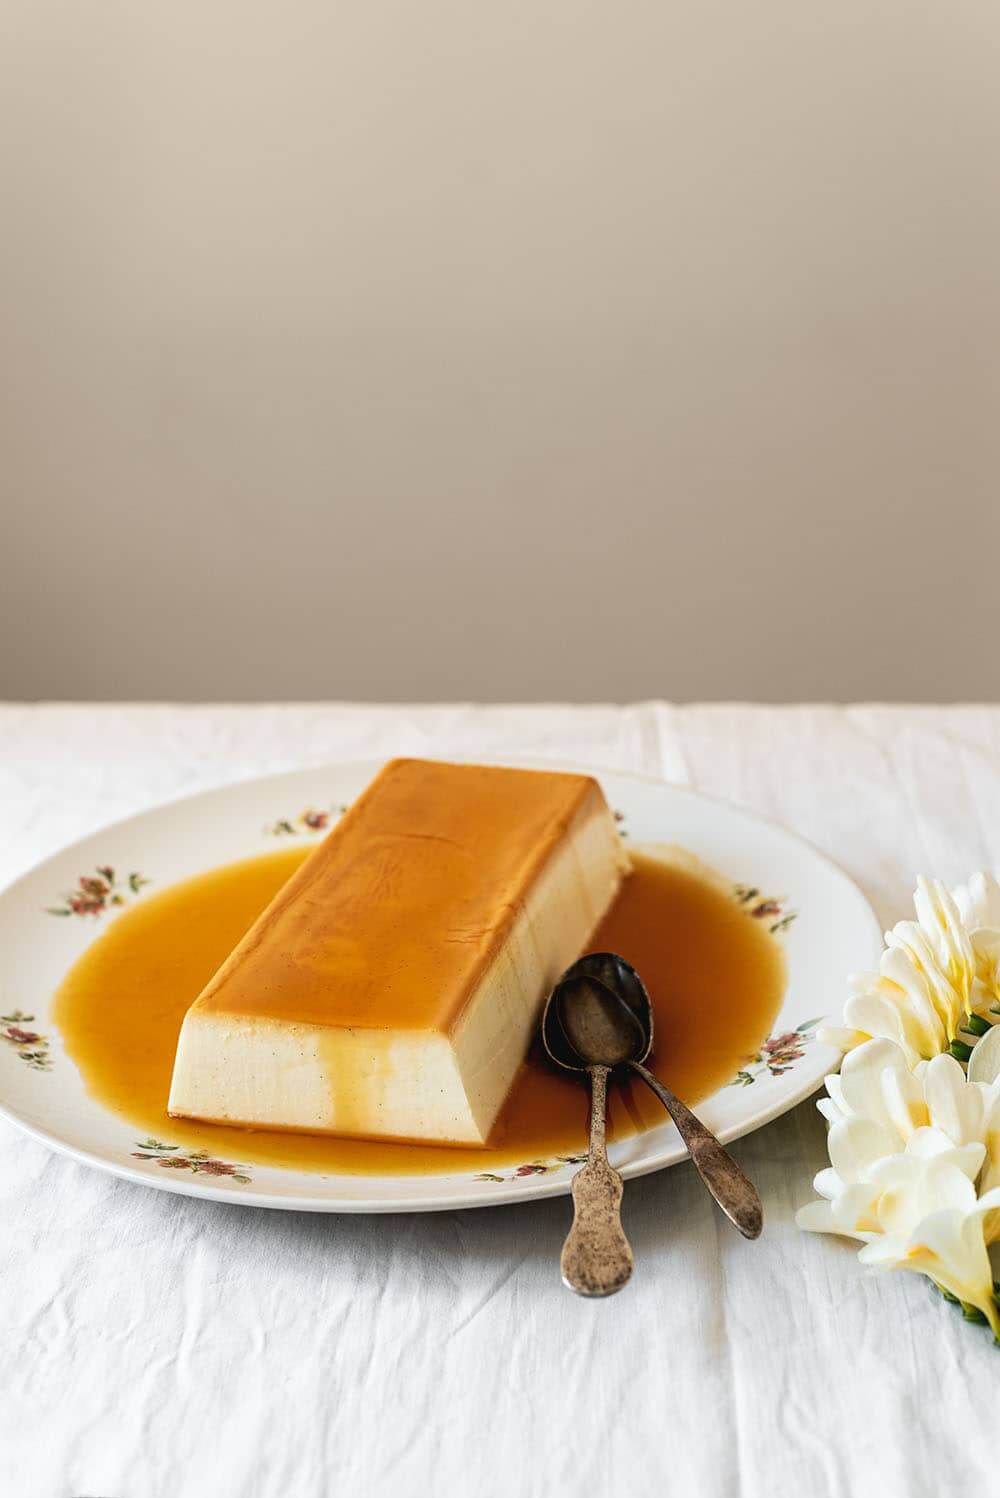 En una mesa cubierta con un mantel blanco hay un plato blanco con el flan de queso sin horno. El flan está rodeada con la salsa de caramelo. Al lado del plato hay unas flores blancas.